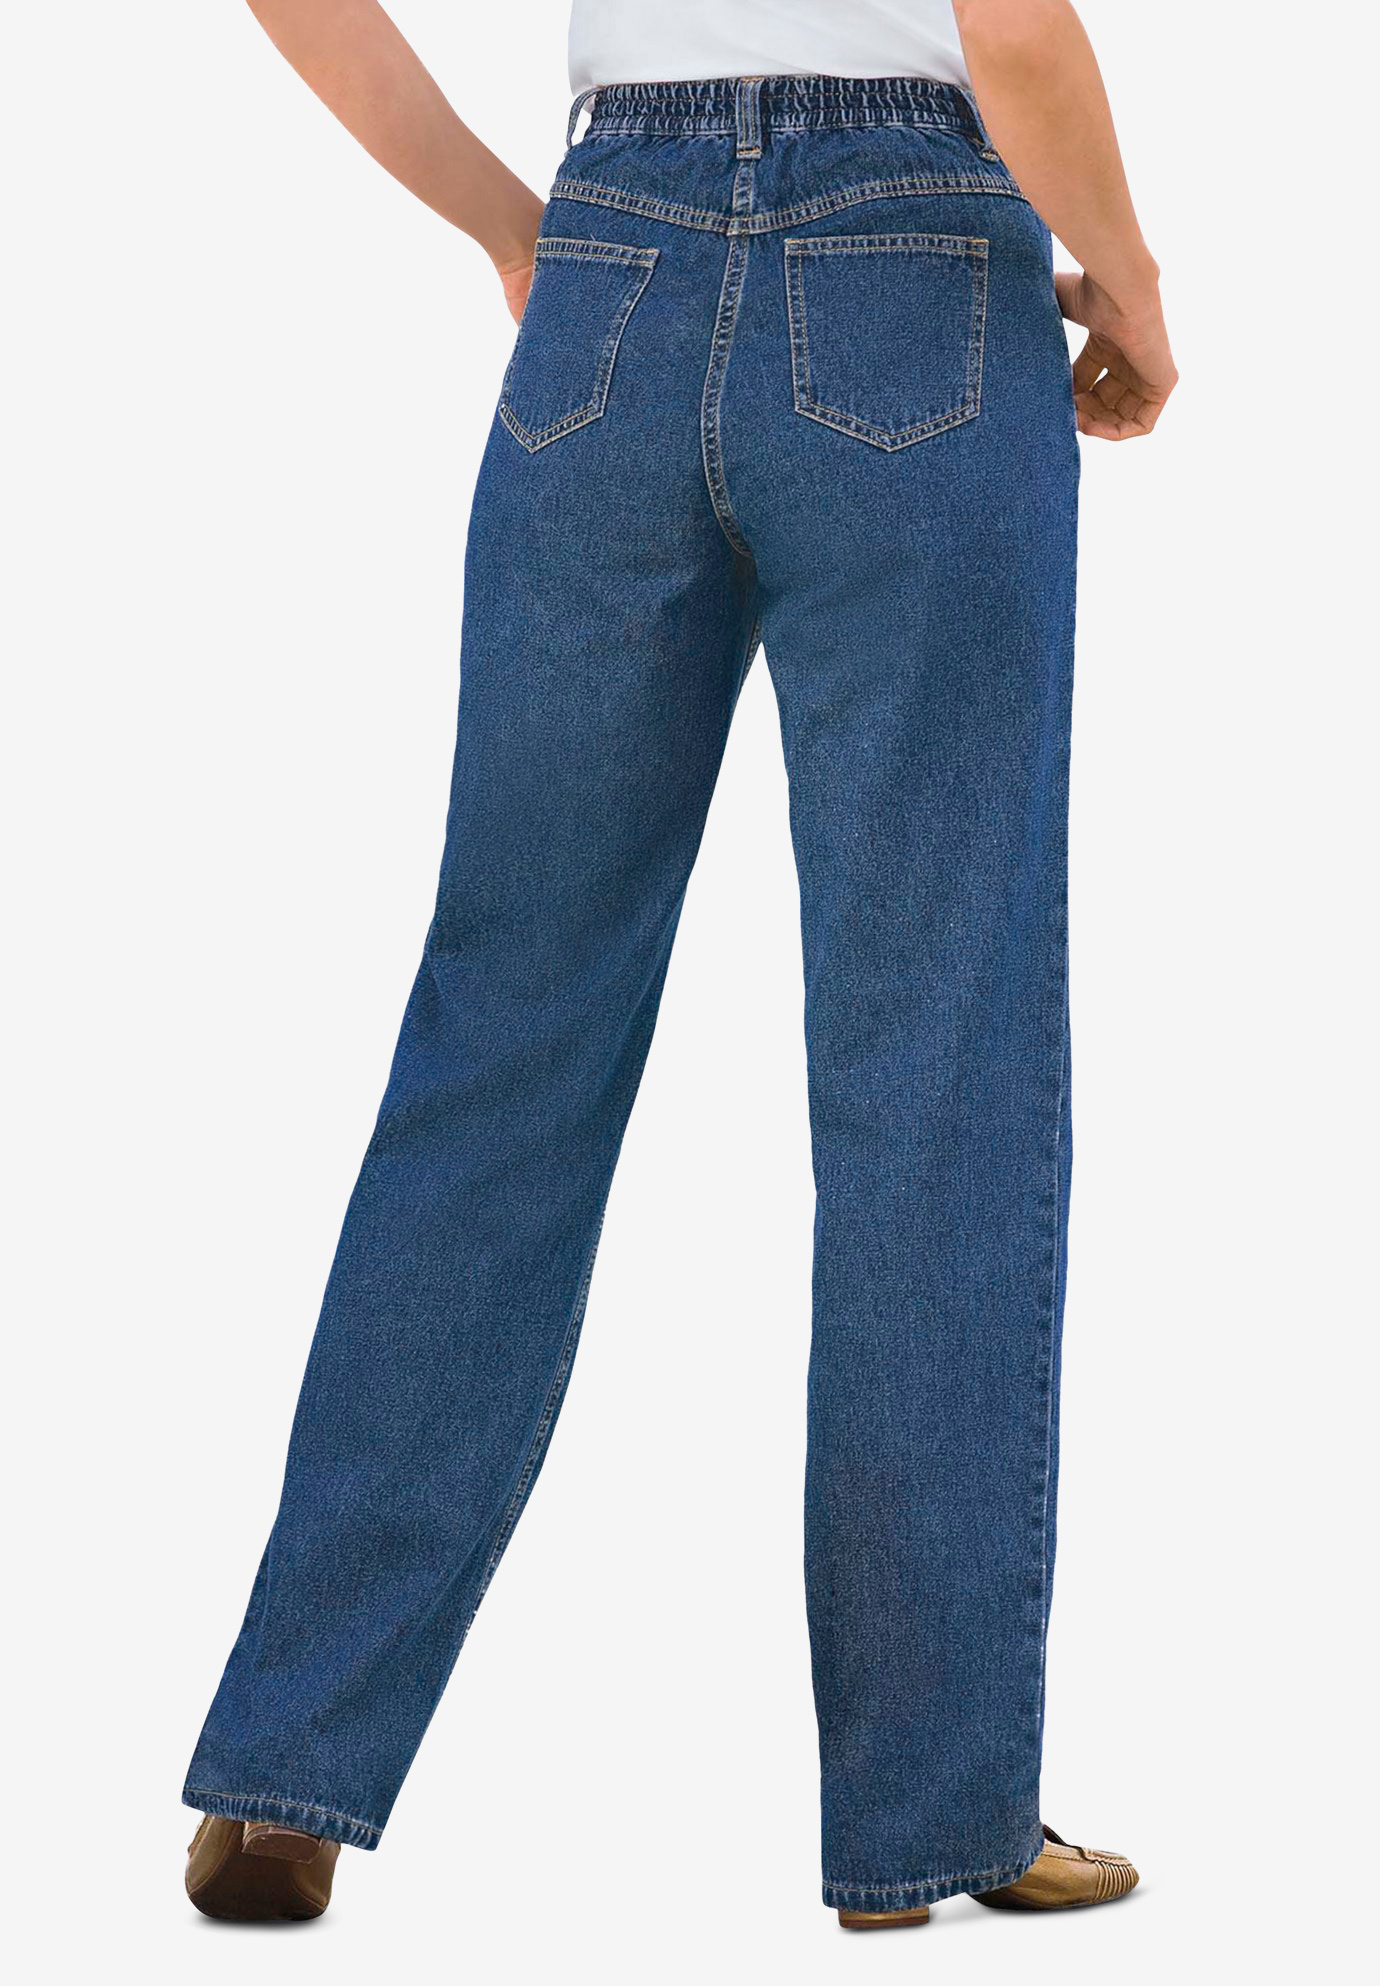 blue cotton jeans